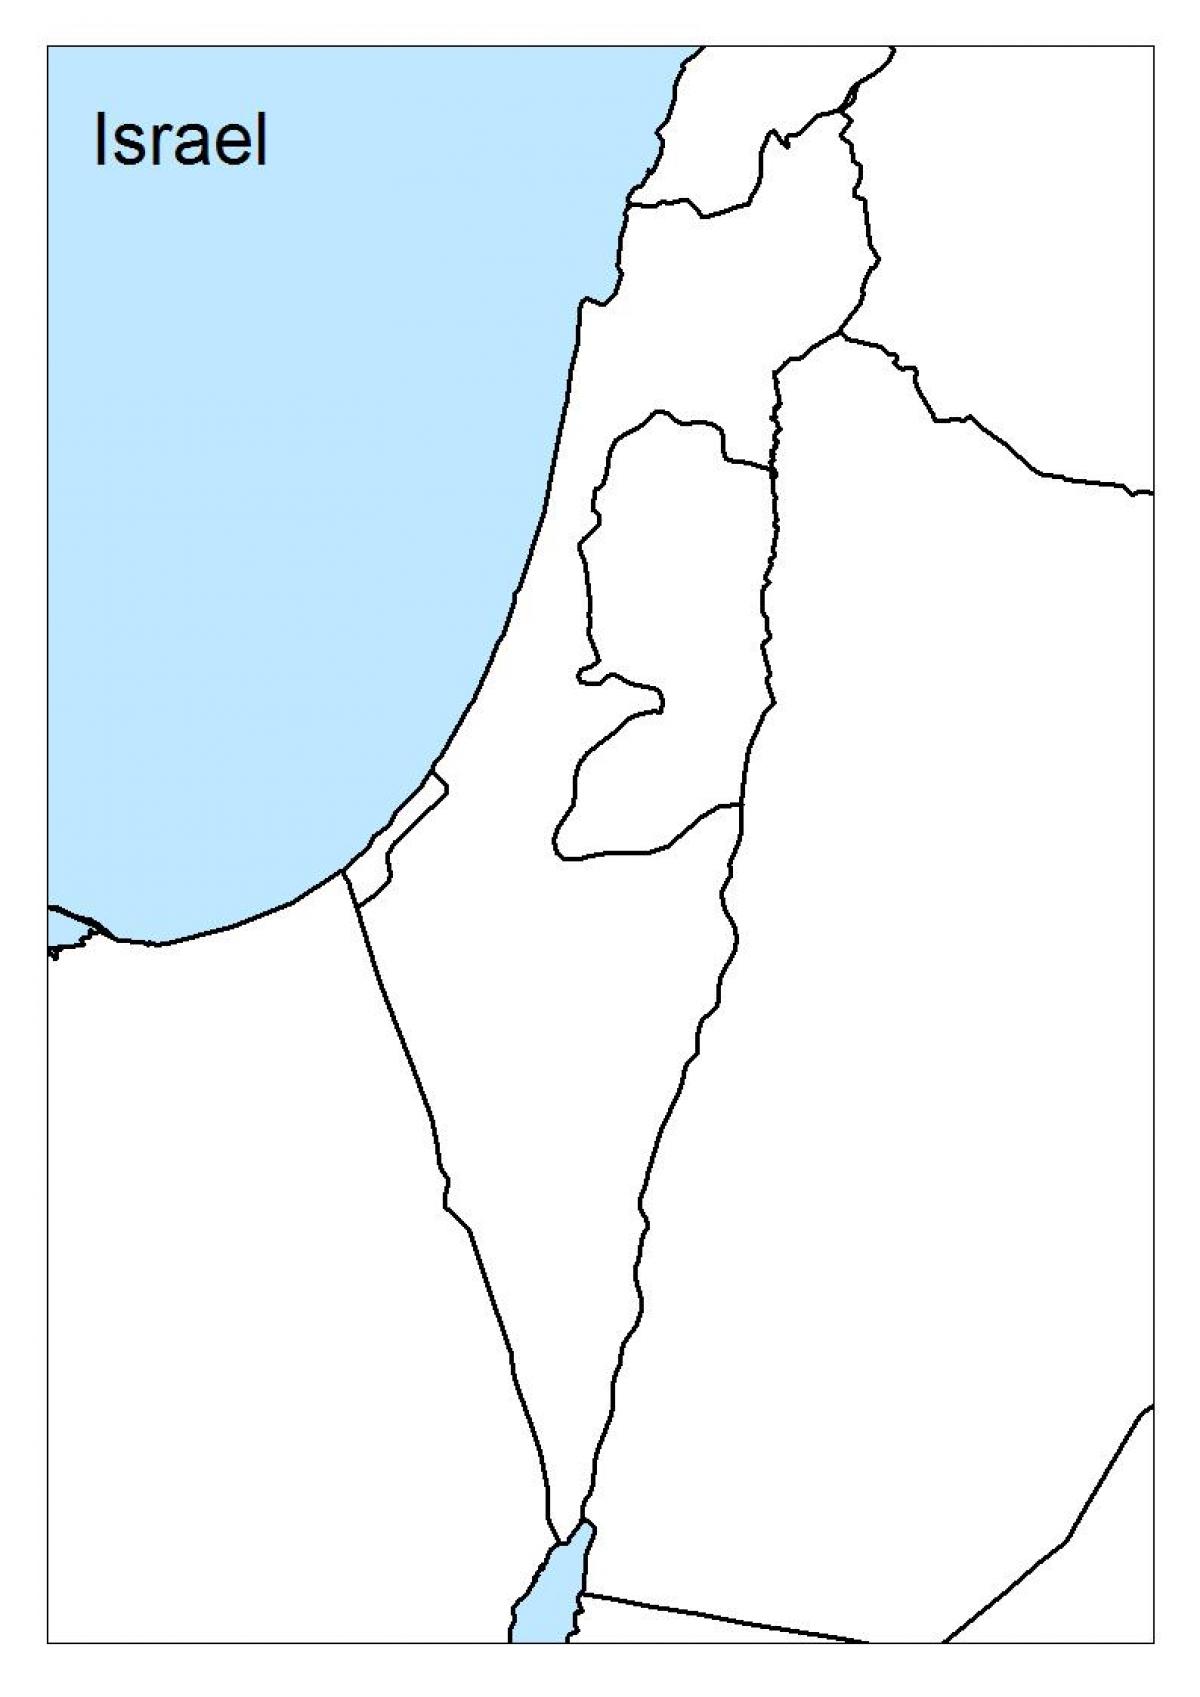 zemljevid izraela prazno